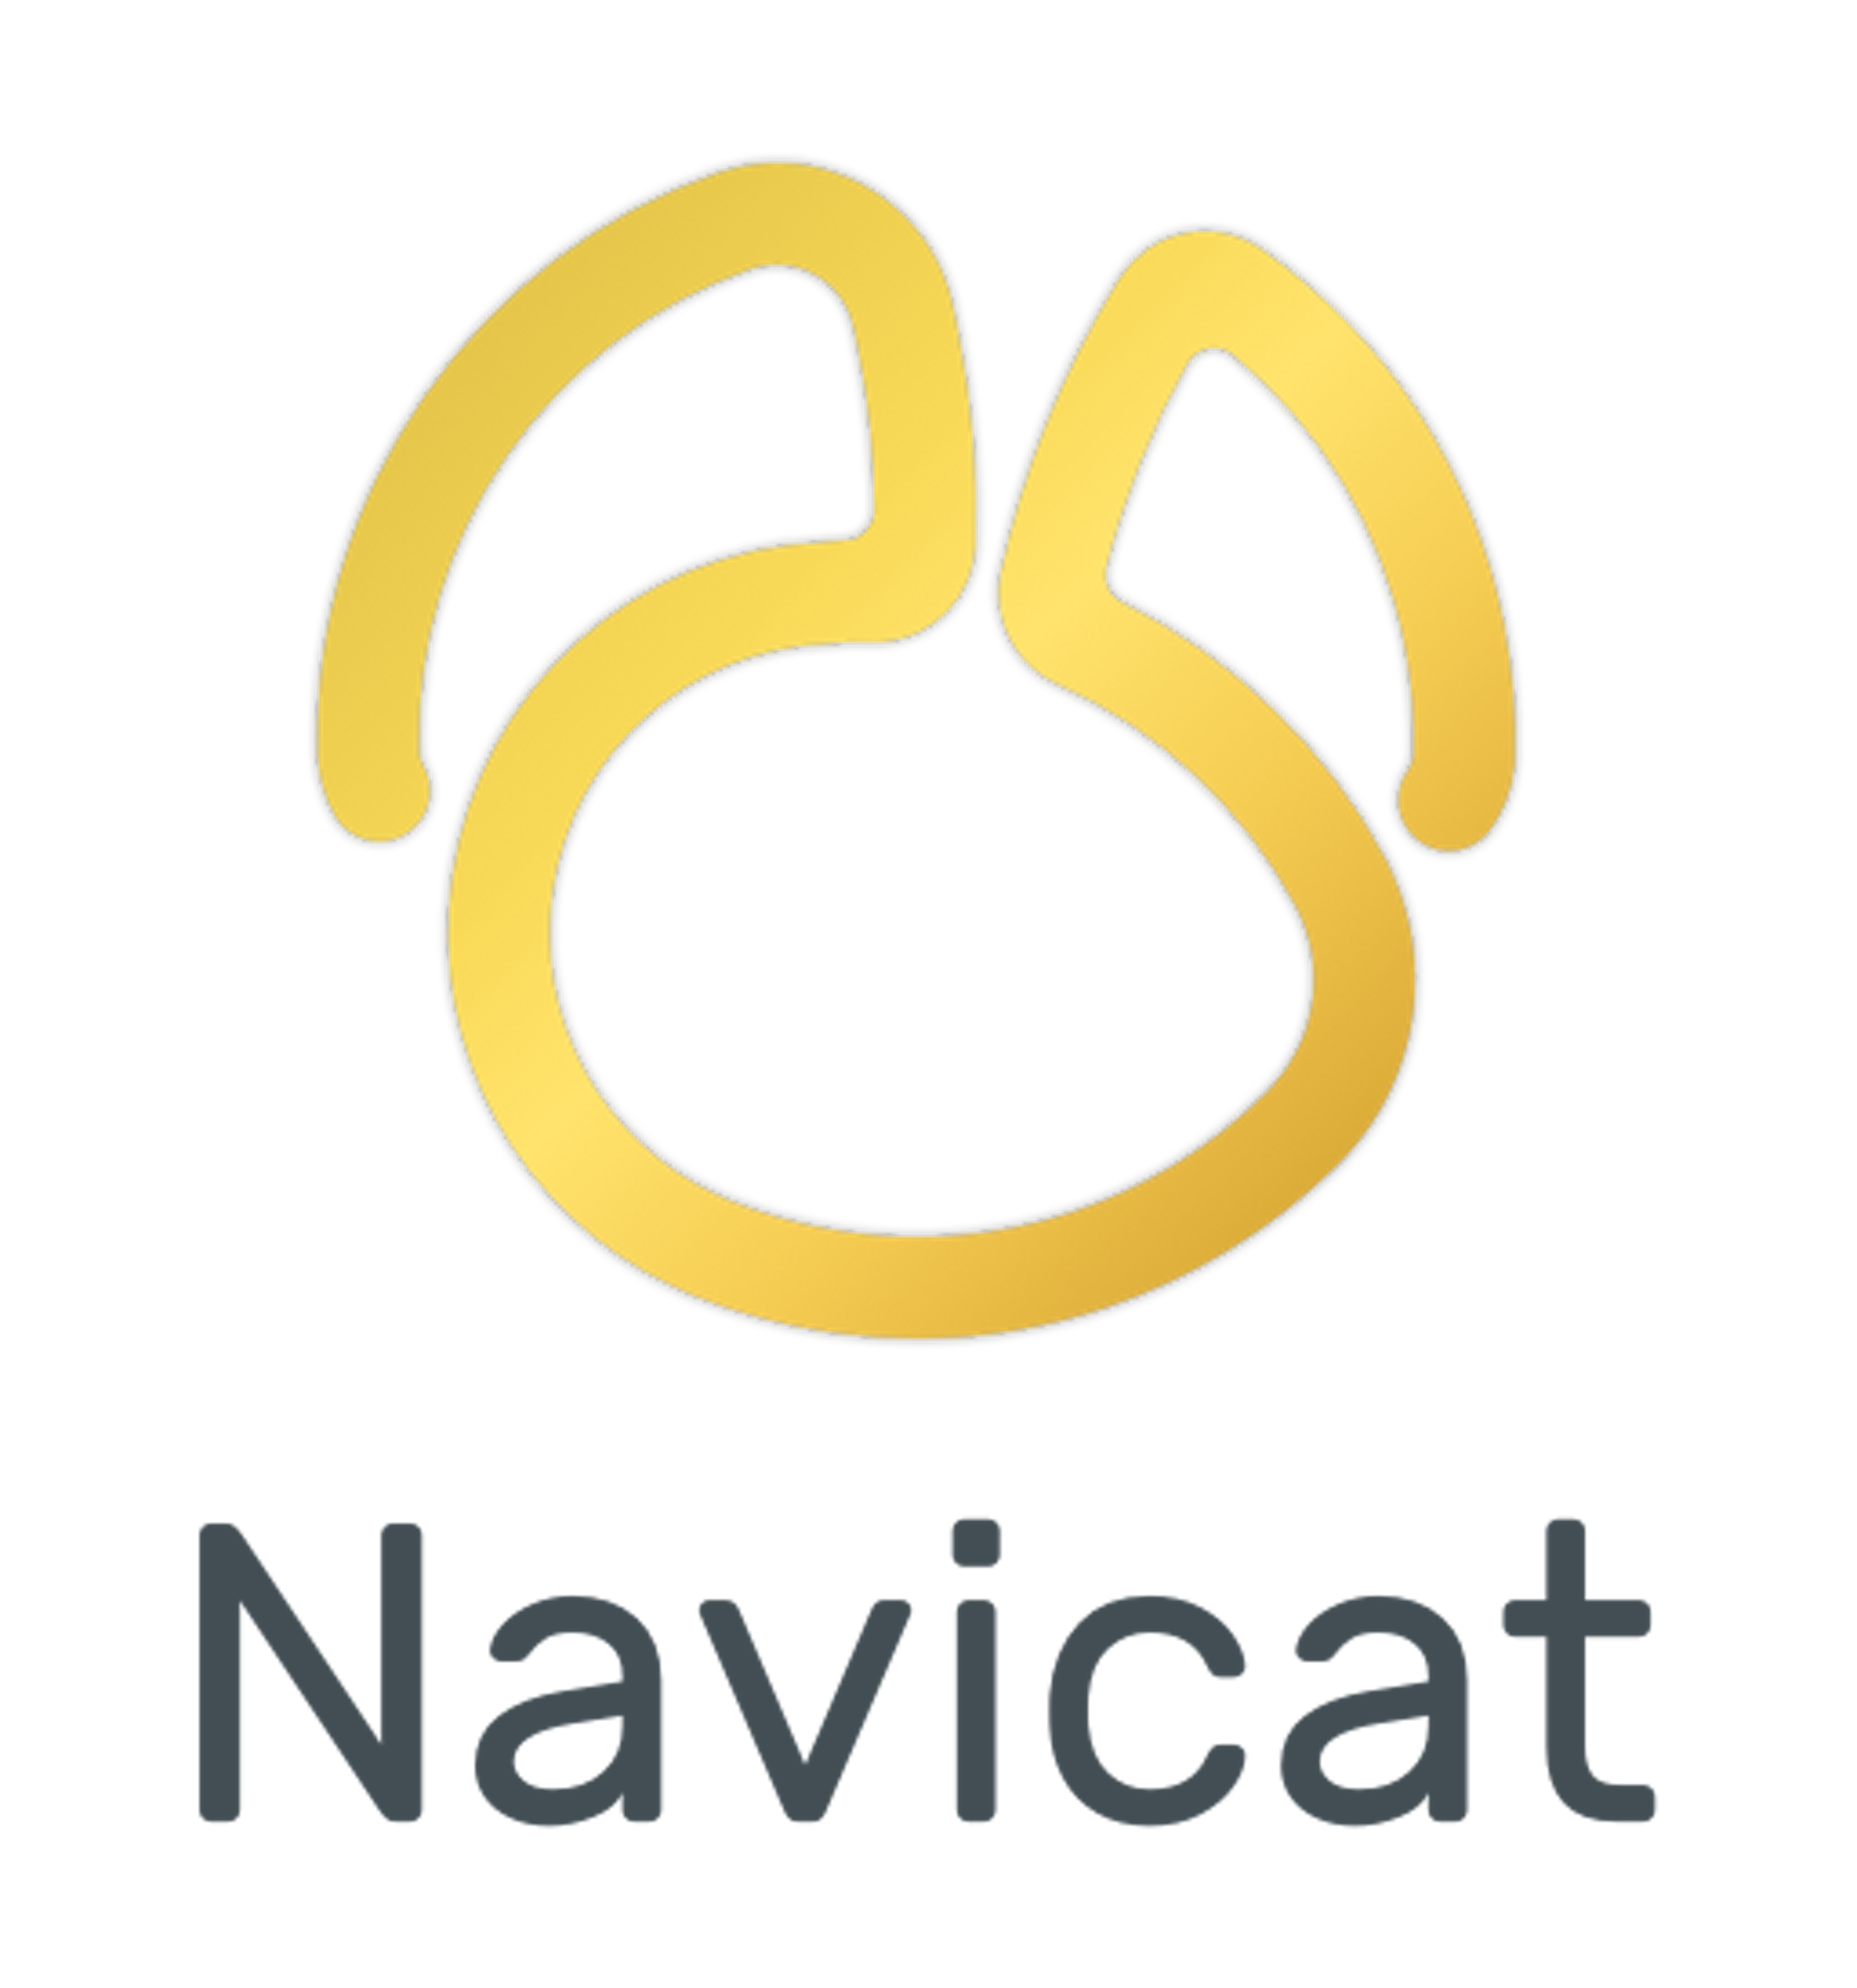 Navicat Premium Logo